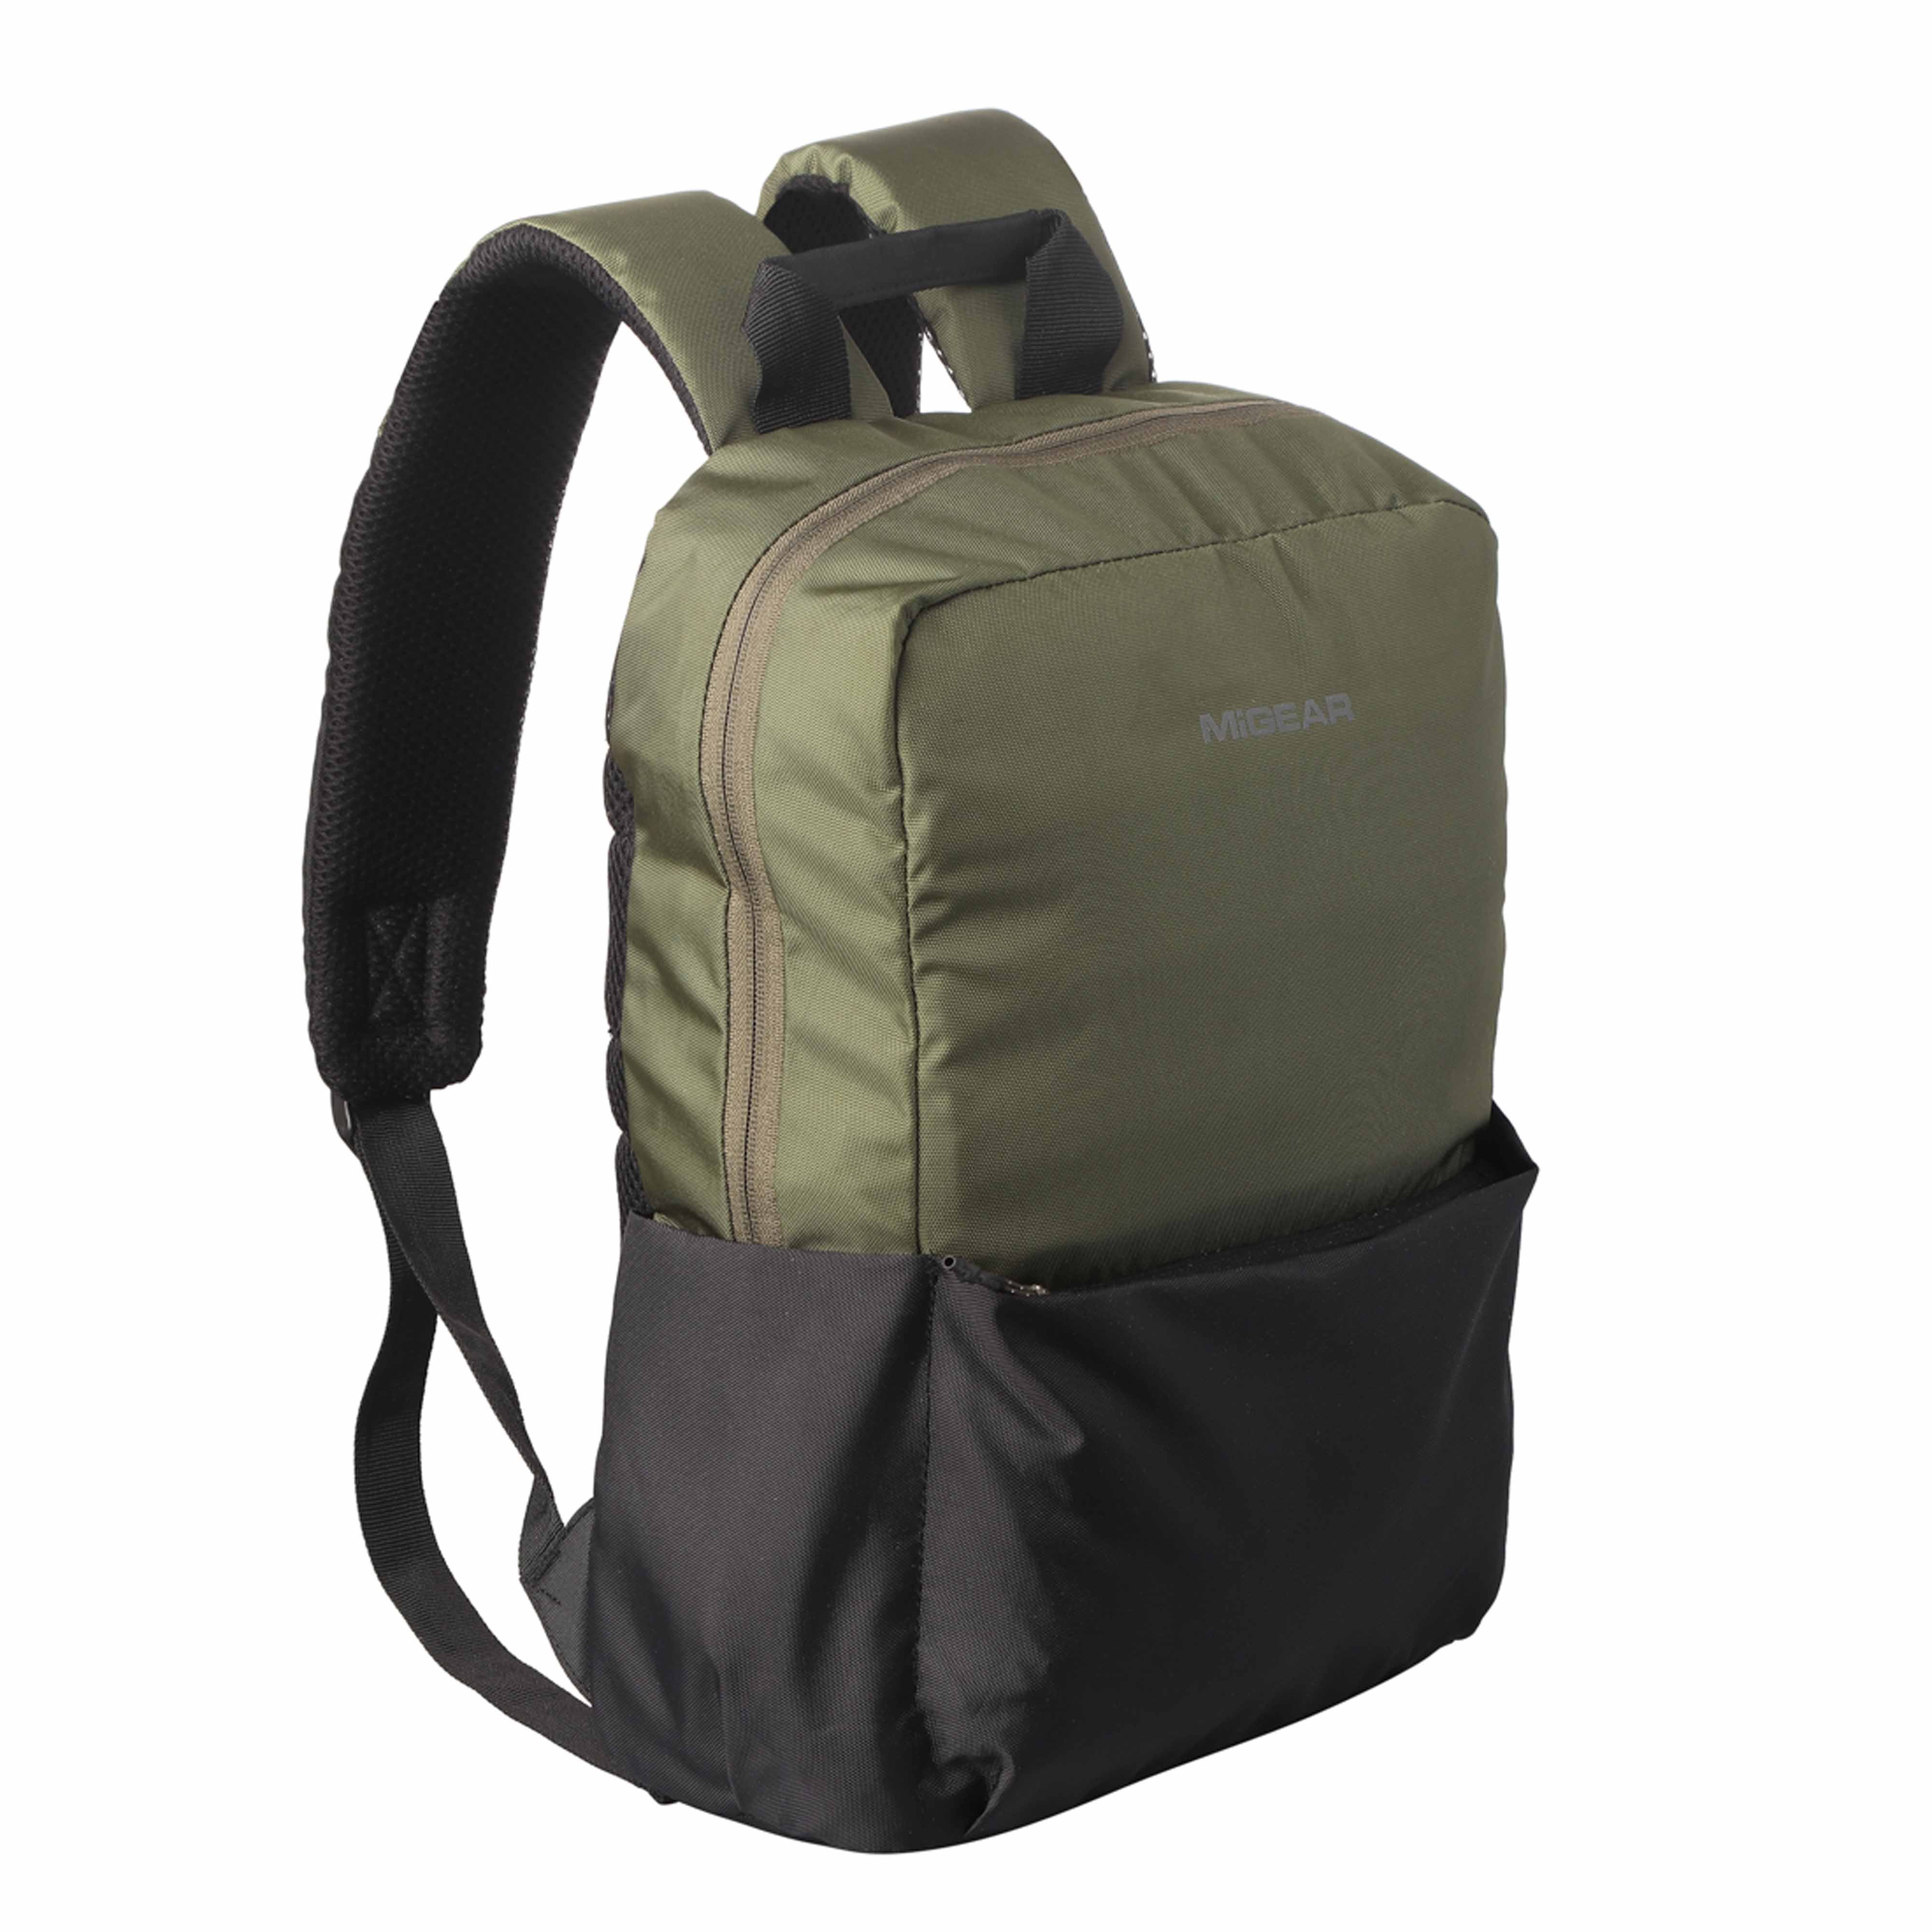 TrailBlazer Backpack